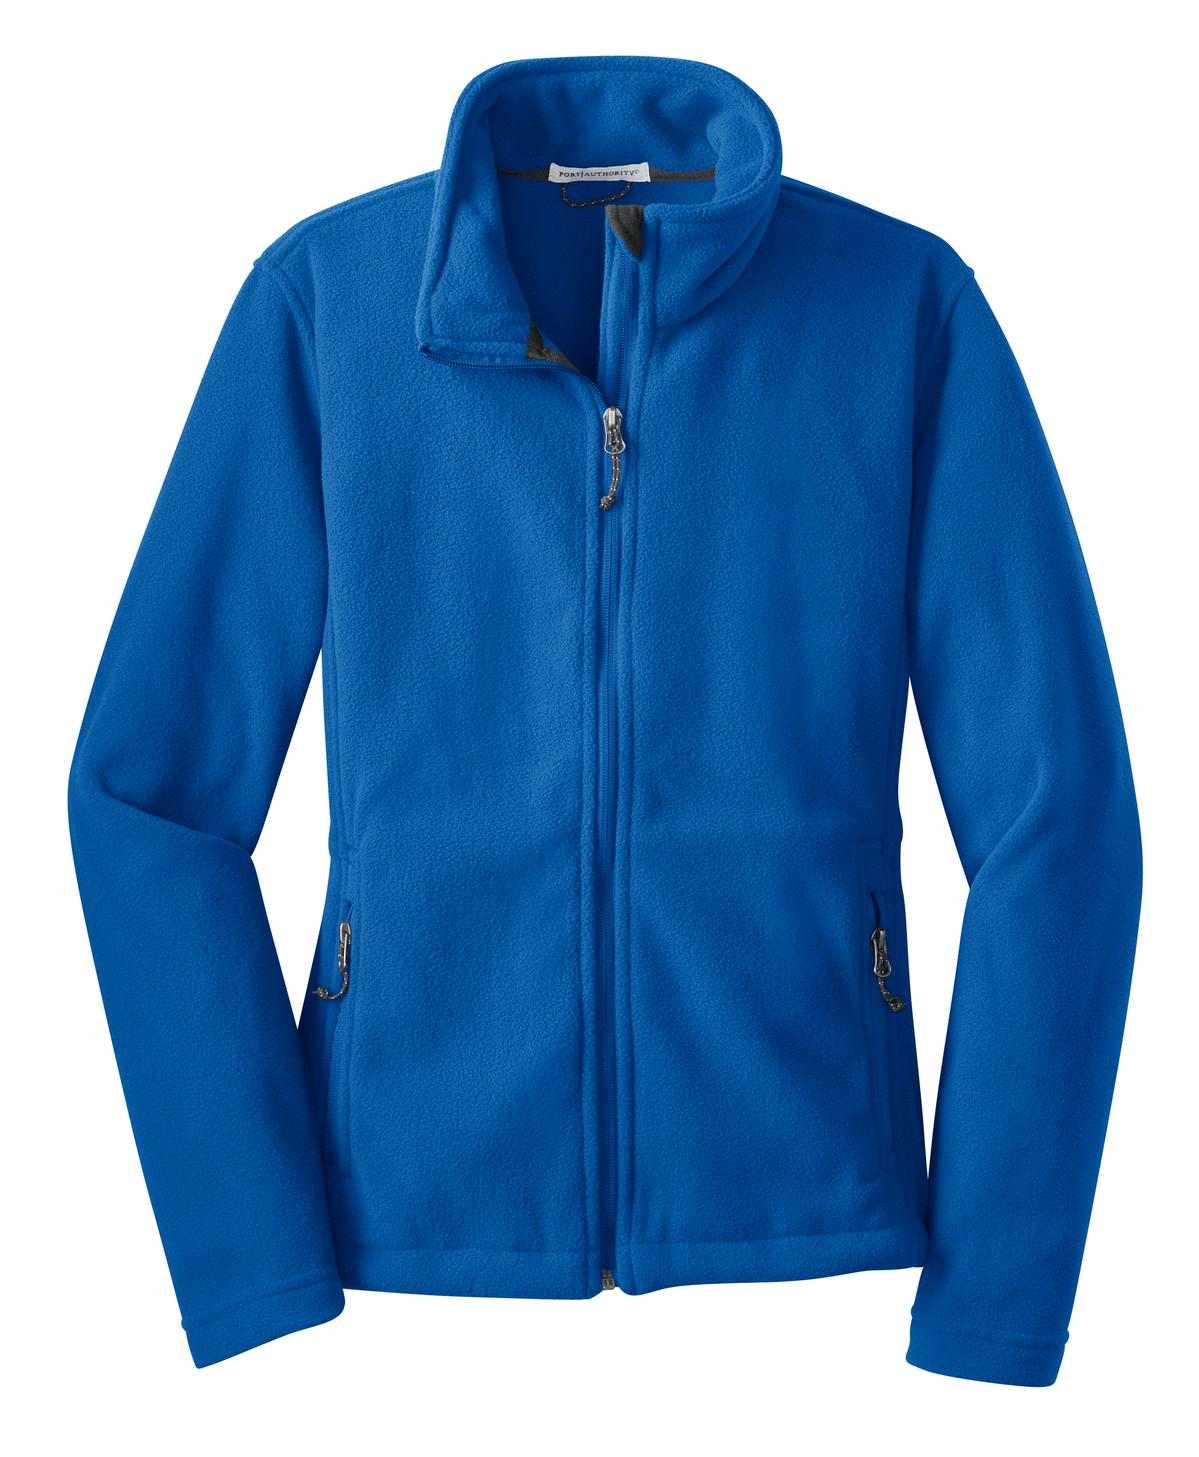 Port Authority L217 Ladies Value Fleece Jacket - True Royal - HIT a Double - 5